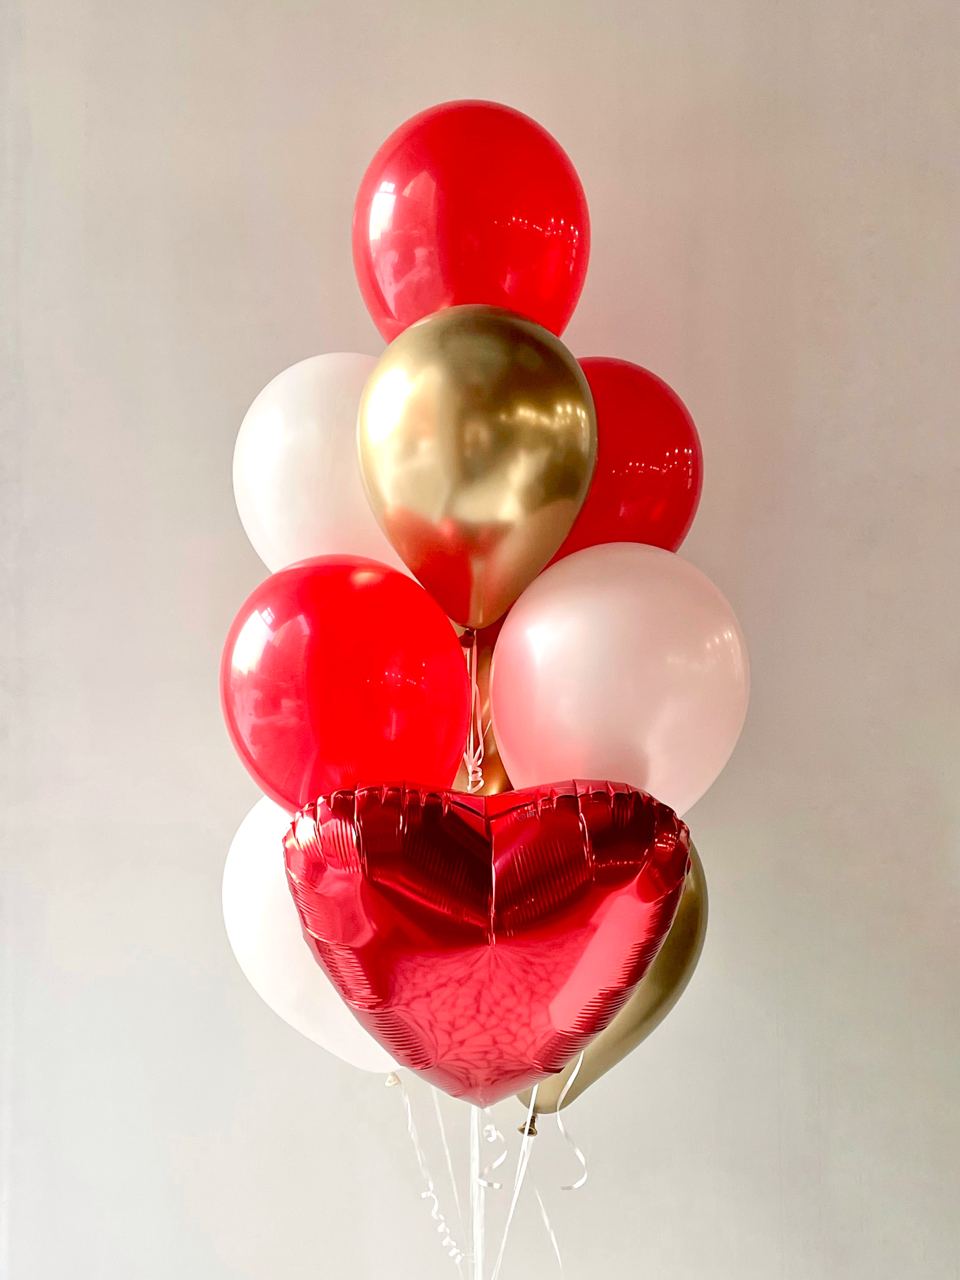 Сет "Valentine" фонтан из воздушных шаров